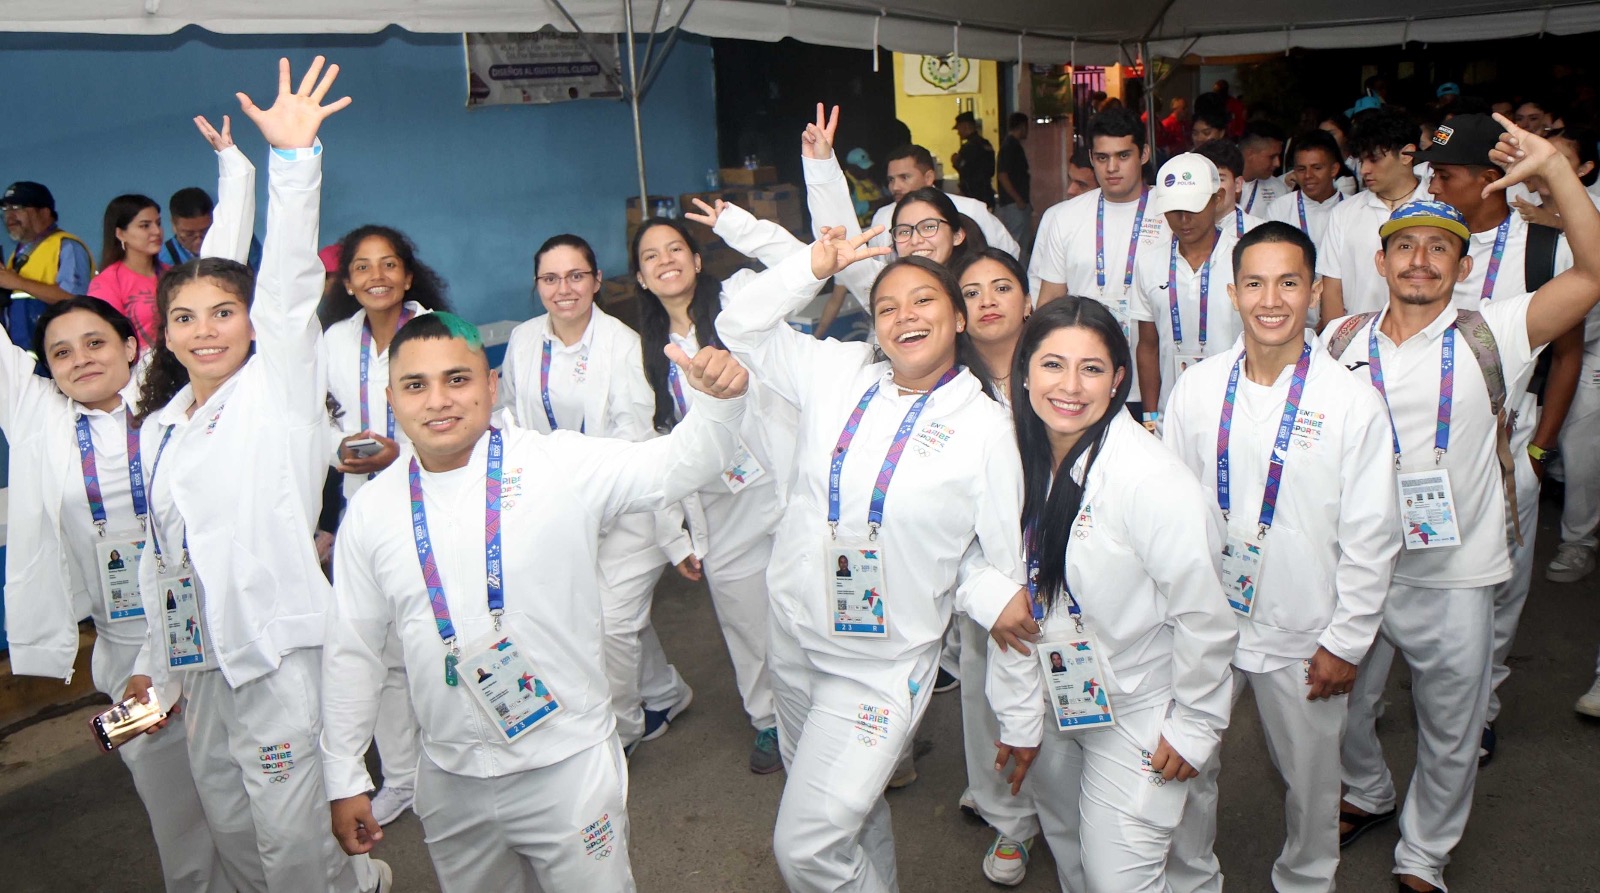 Los atletas guatemaltecos se mostraron motivados momentos durante la ceremonia de inauguración. (Foto Prensa Libre: Salvador 2023)